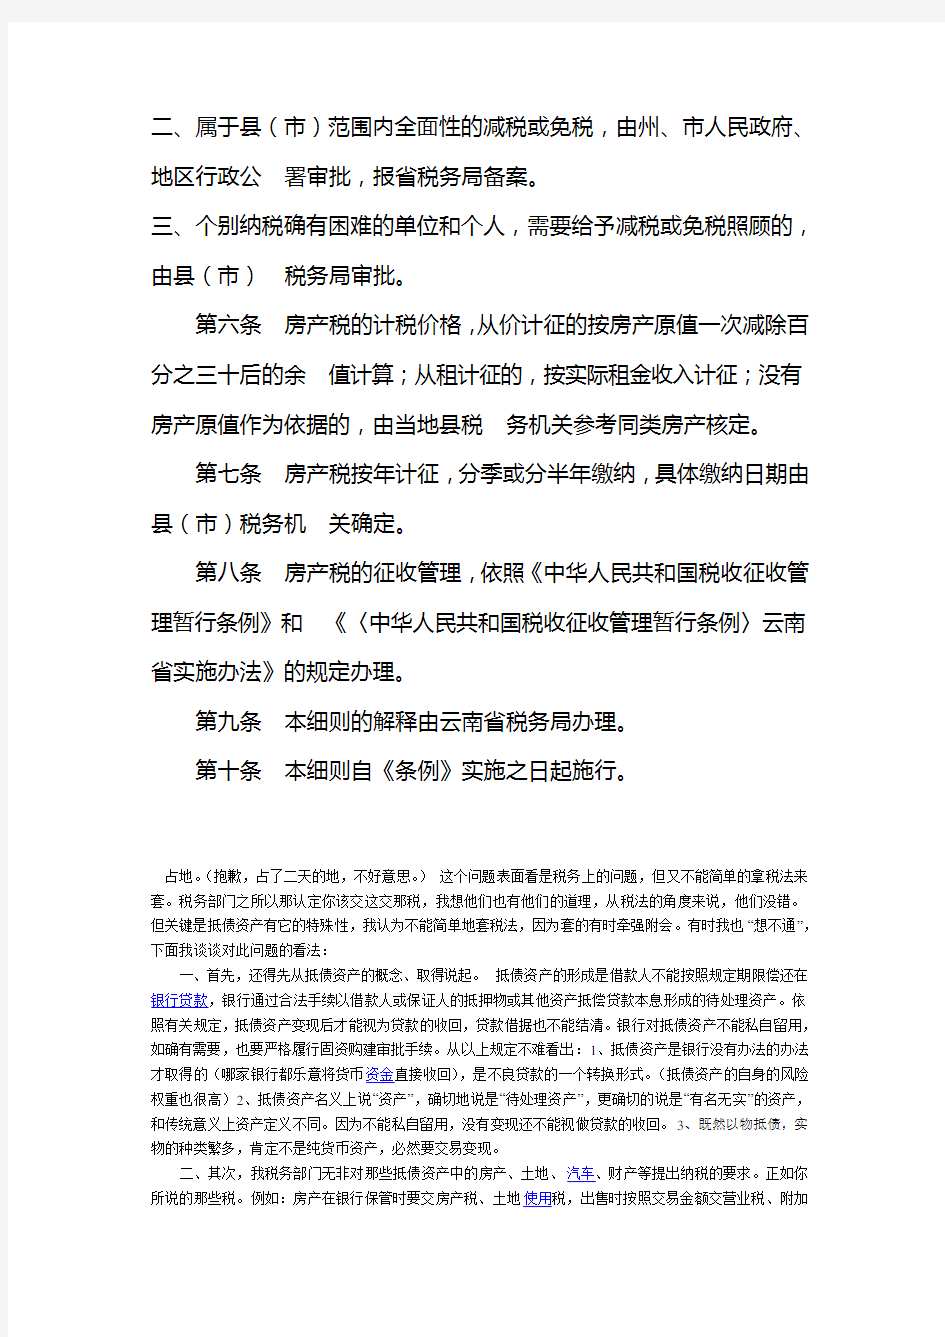 中华人民共和国房产税暂行条例实施细则